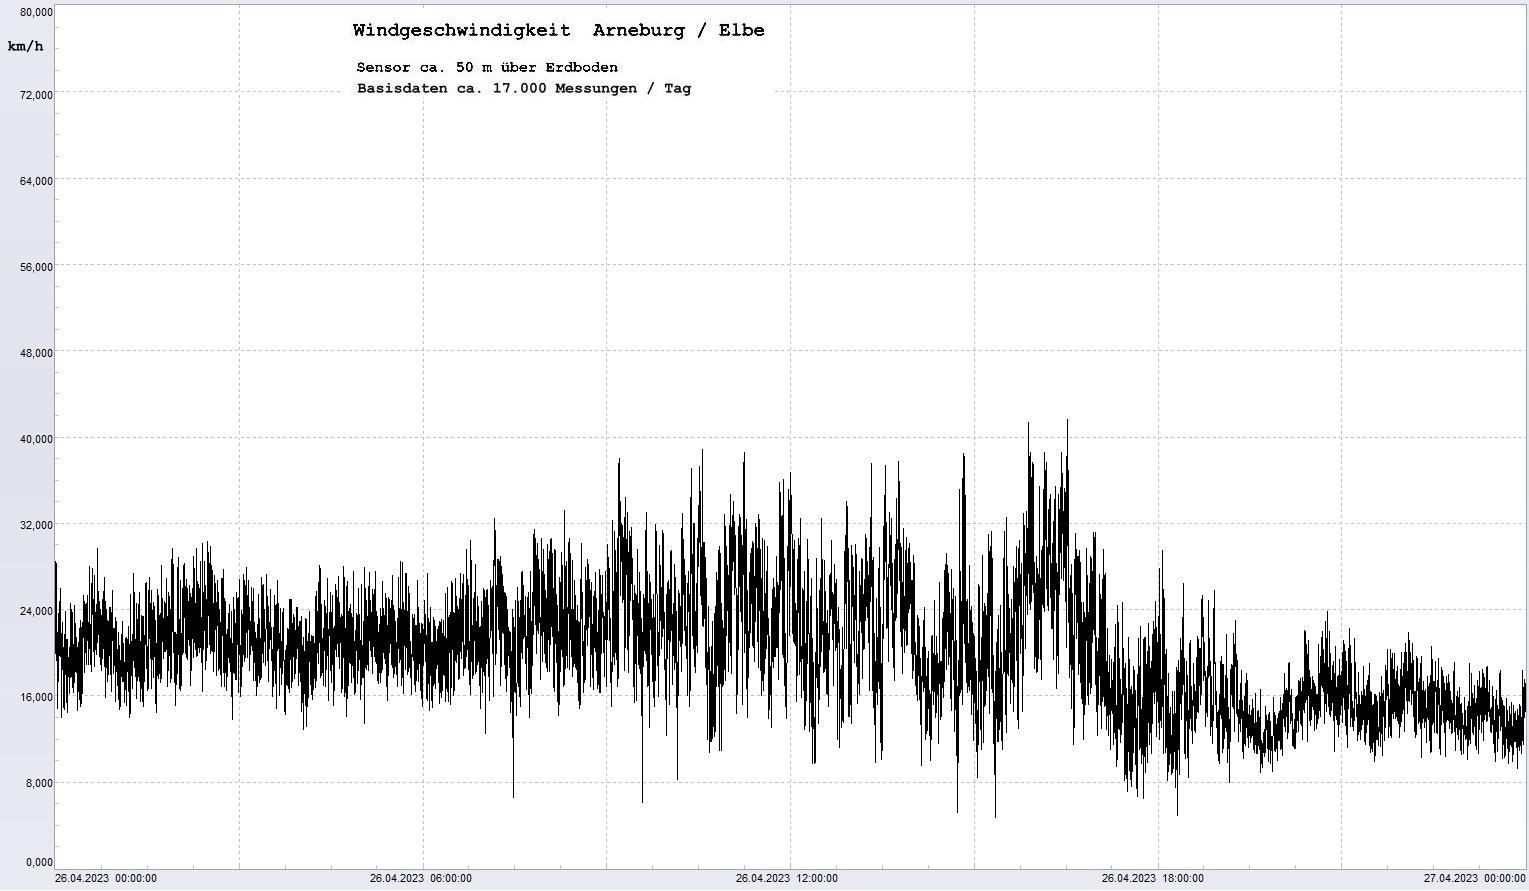 Arneburg Tages-Diagramm Winddaten, 26.04.2023
  Diagramm, Sensor auf Gebäude, ca. 50 m über Erdboden, Basis: 5s-Aufzeichnung